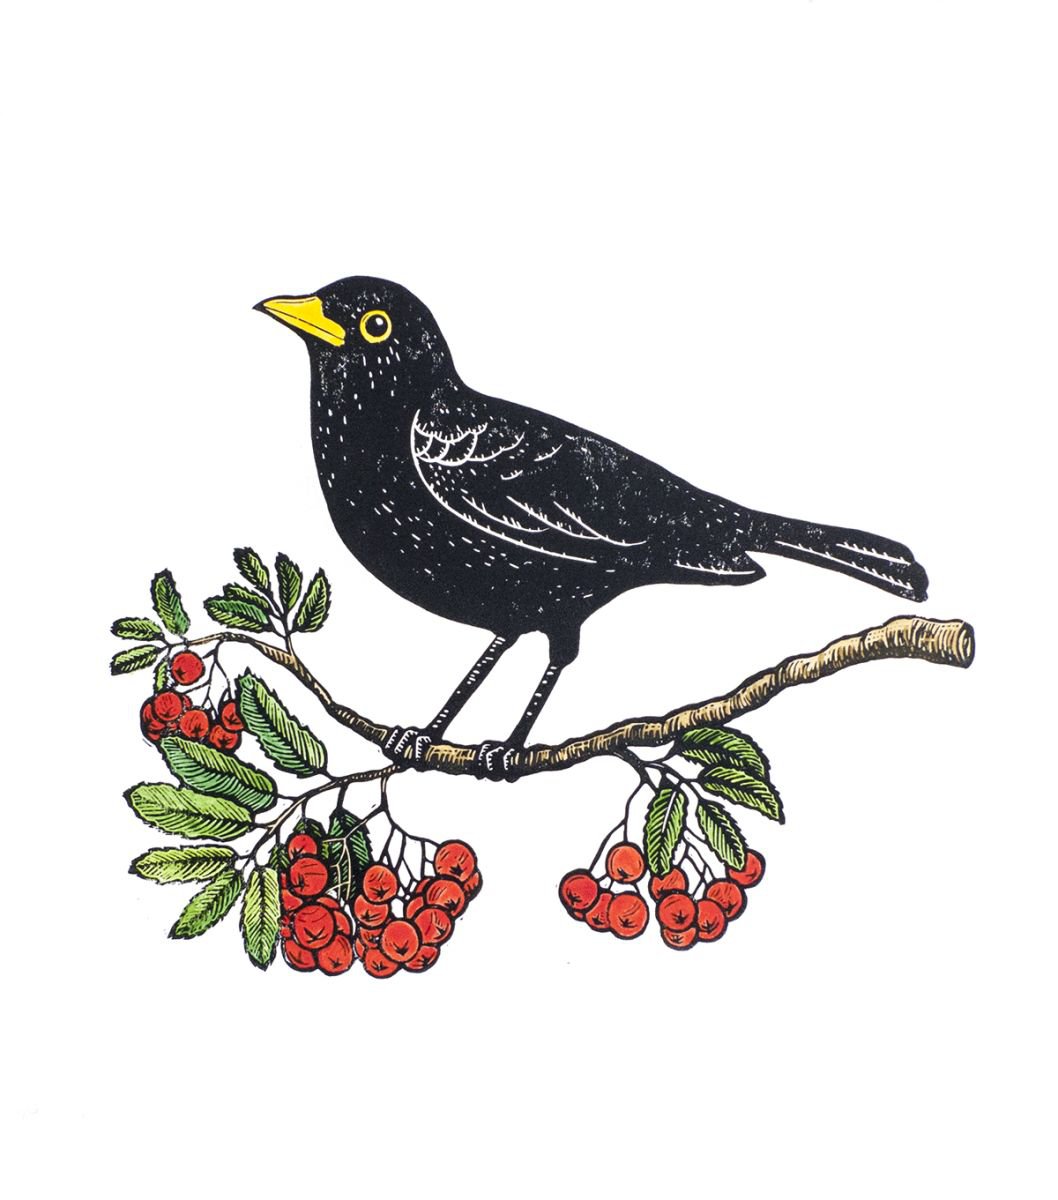 Blackbird & Rowanberries, original hand-colored linocut by Tian Gan